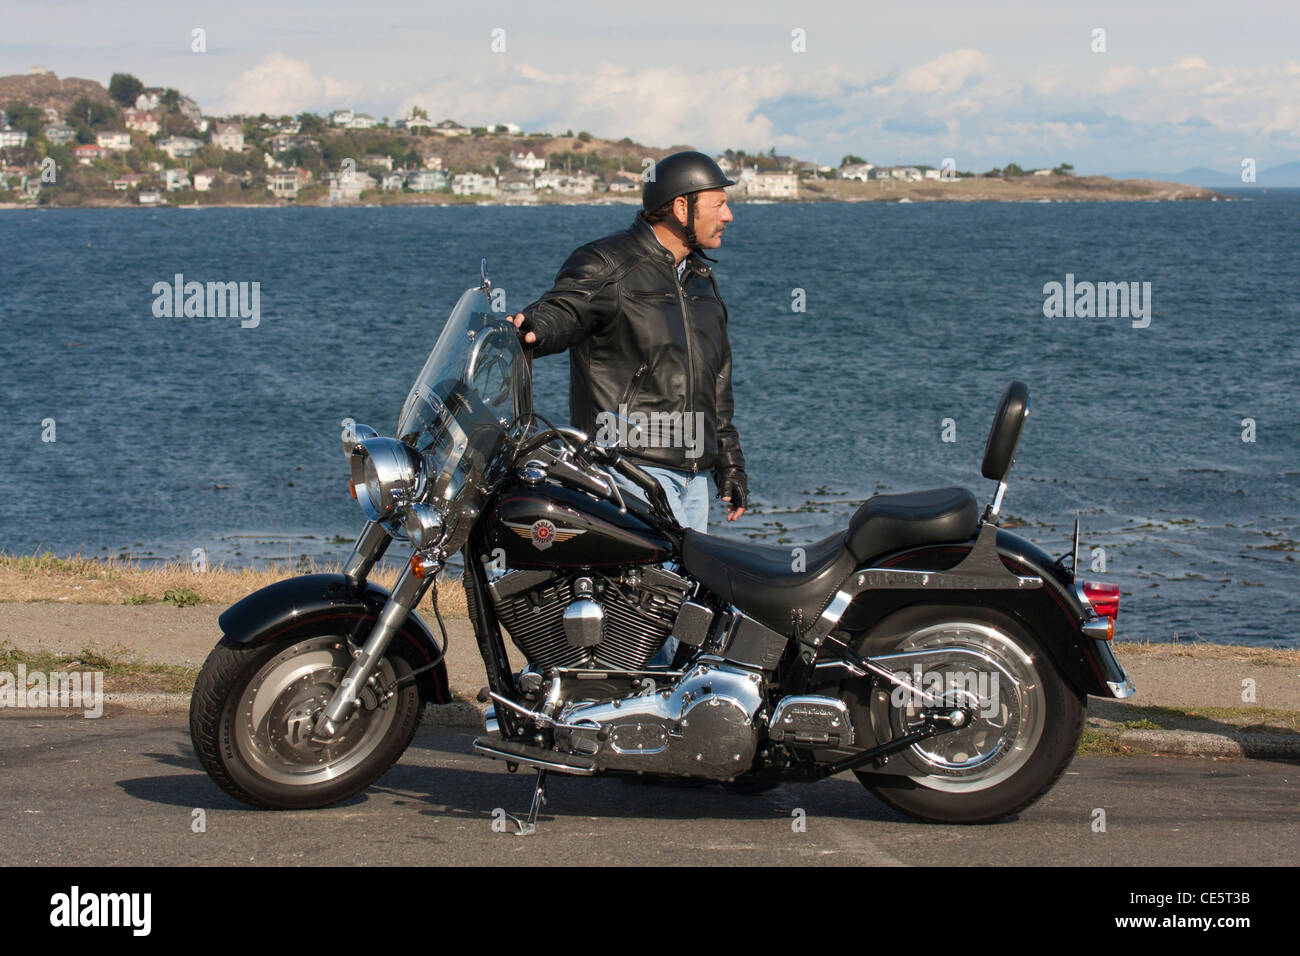 Motorrad Biker Und Seine Harley Davidson Victoria British Columbia Kanada Stockfotografie Alamy